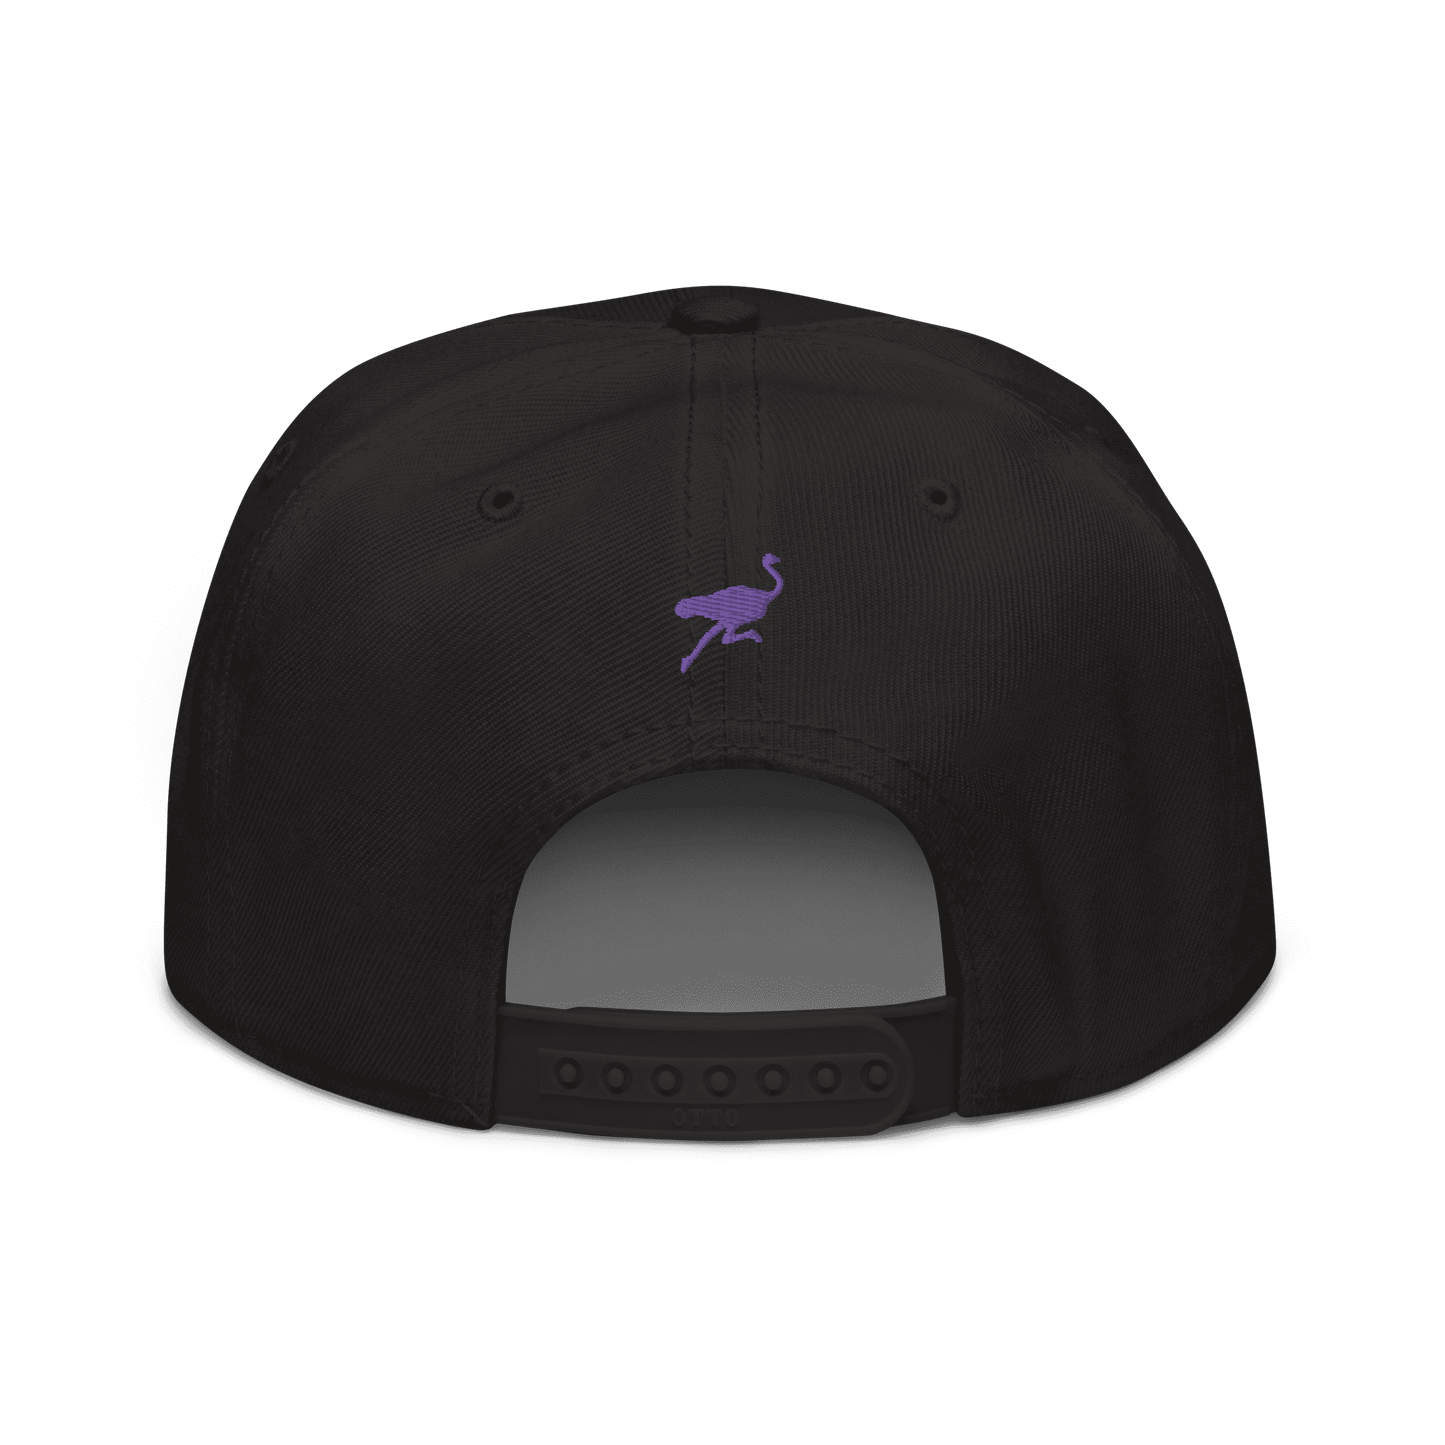 Back view of a black nostr snapback hat.